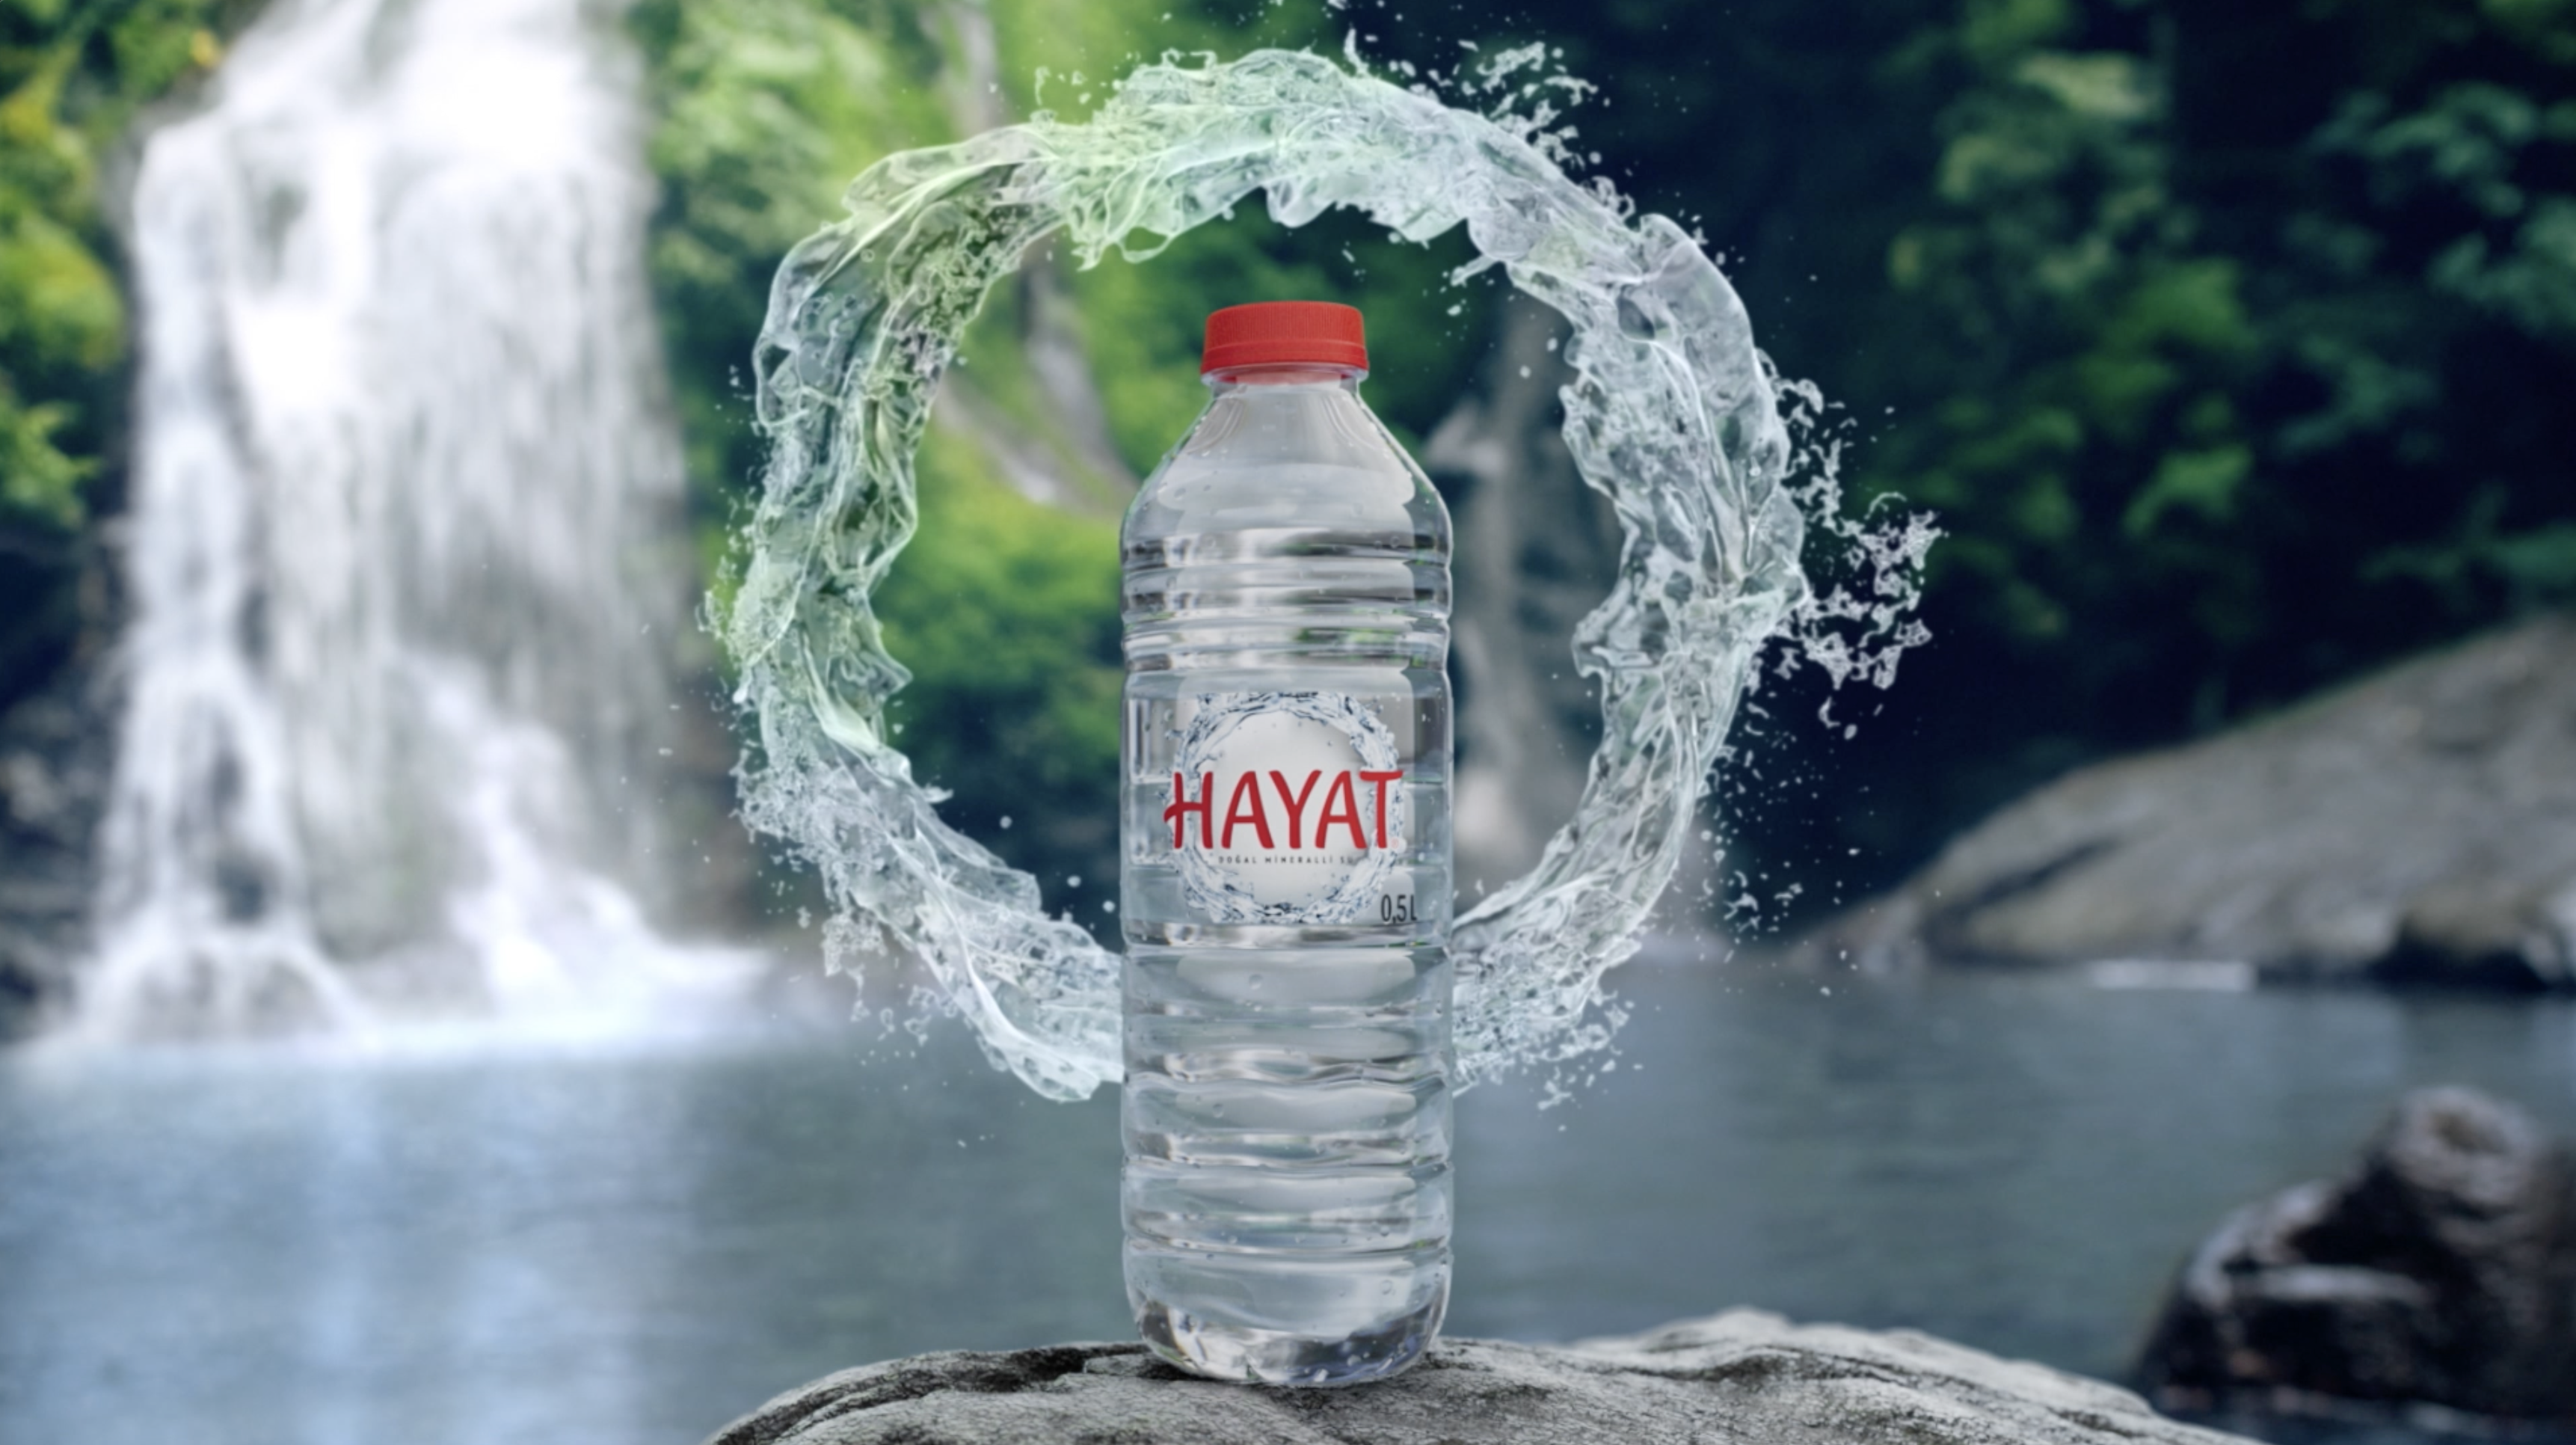 HAYAT Su’dan YENİ REKLAM KAMPANYASI: “Hayat Kaynağım”  %100 doğal mineralli suyu tüketiciyle buluşturan Hayat Su,   yeni reklam kampanyası “Hayat Kaynağım”ı yayınladı. 